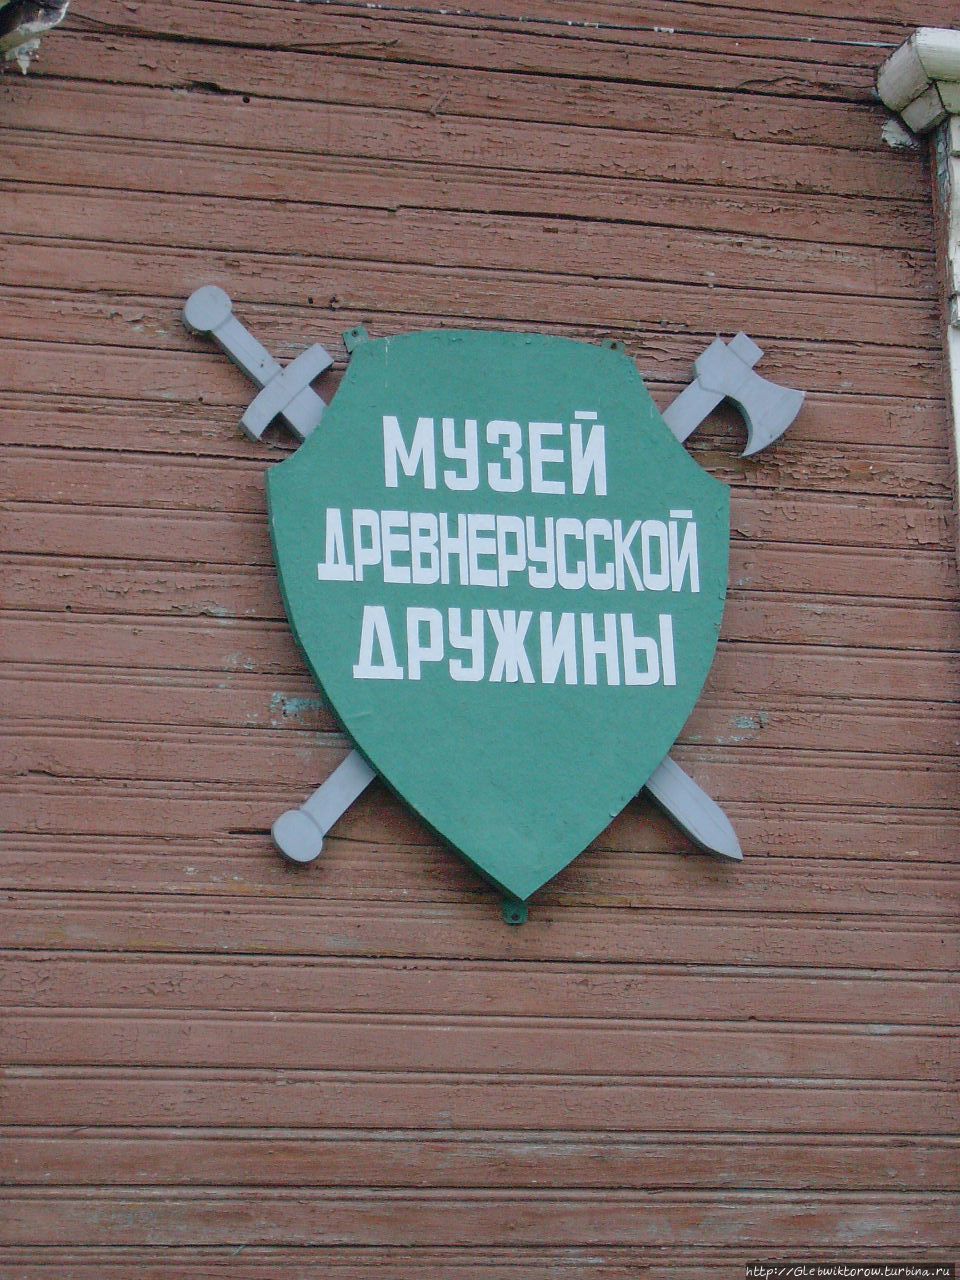 Поездка в Белозерск в мае Белозерск, Россия